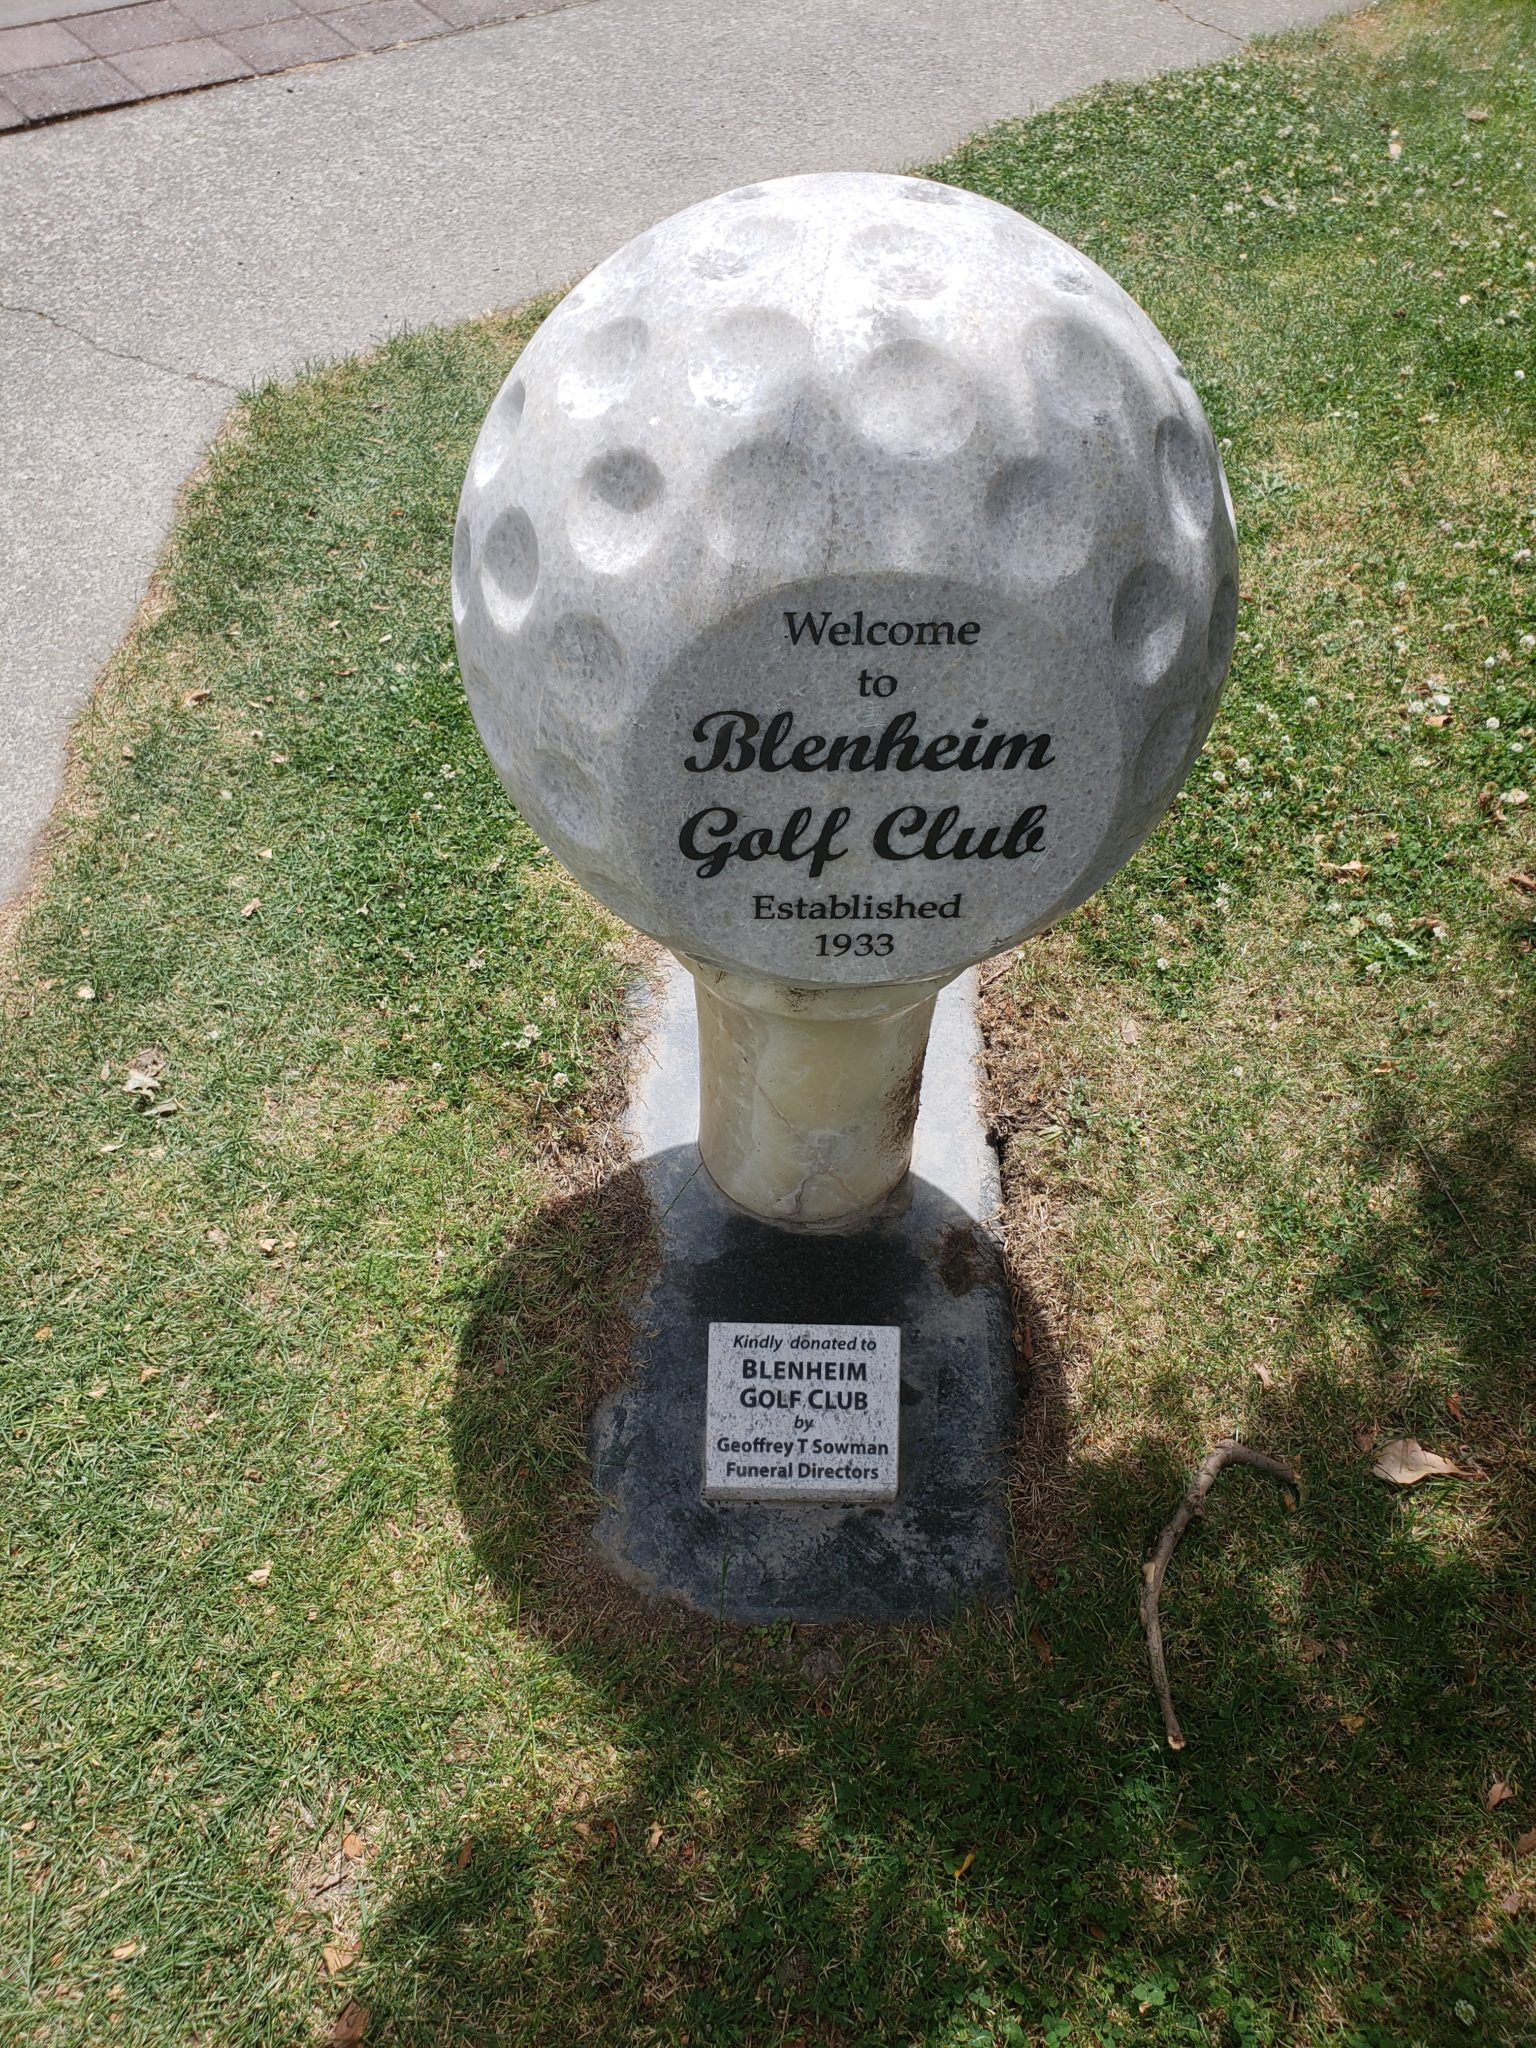 a stone golf ball on a tee